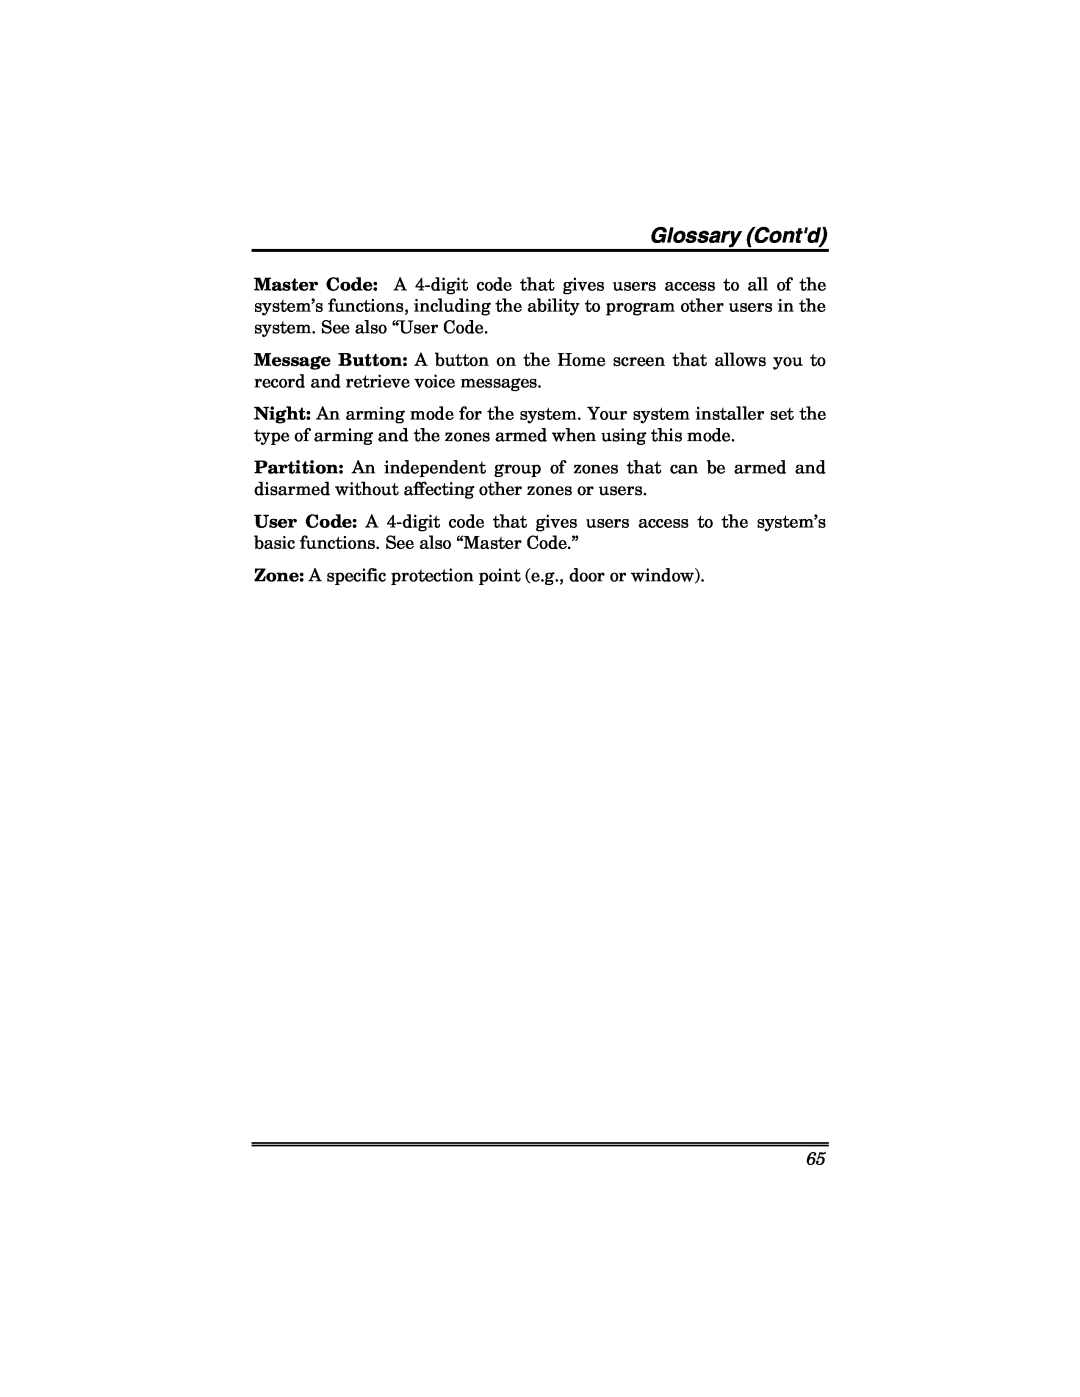 Honeywell 6271V manual Glossary Contd 